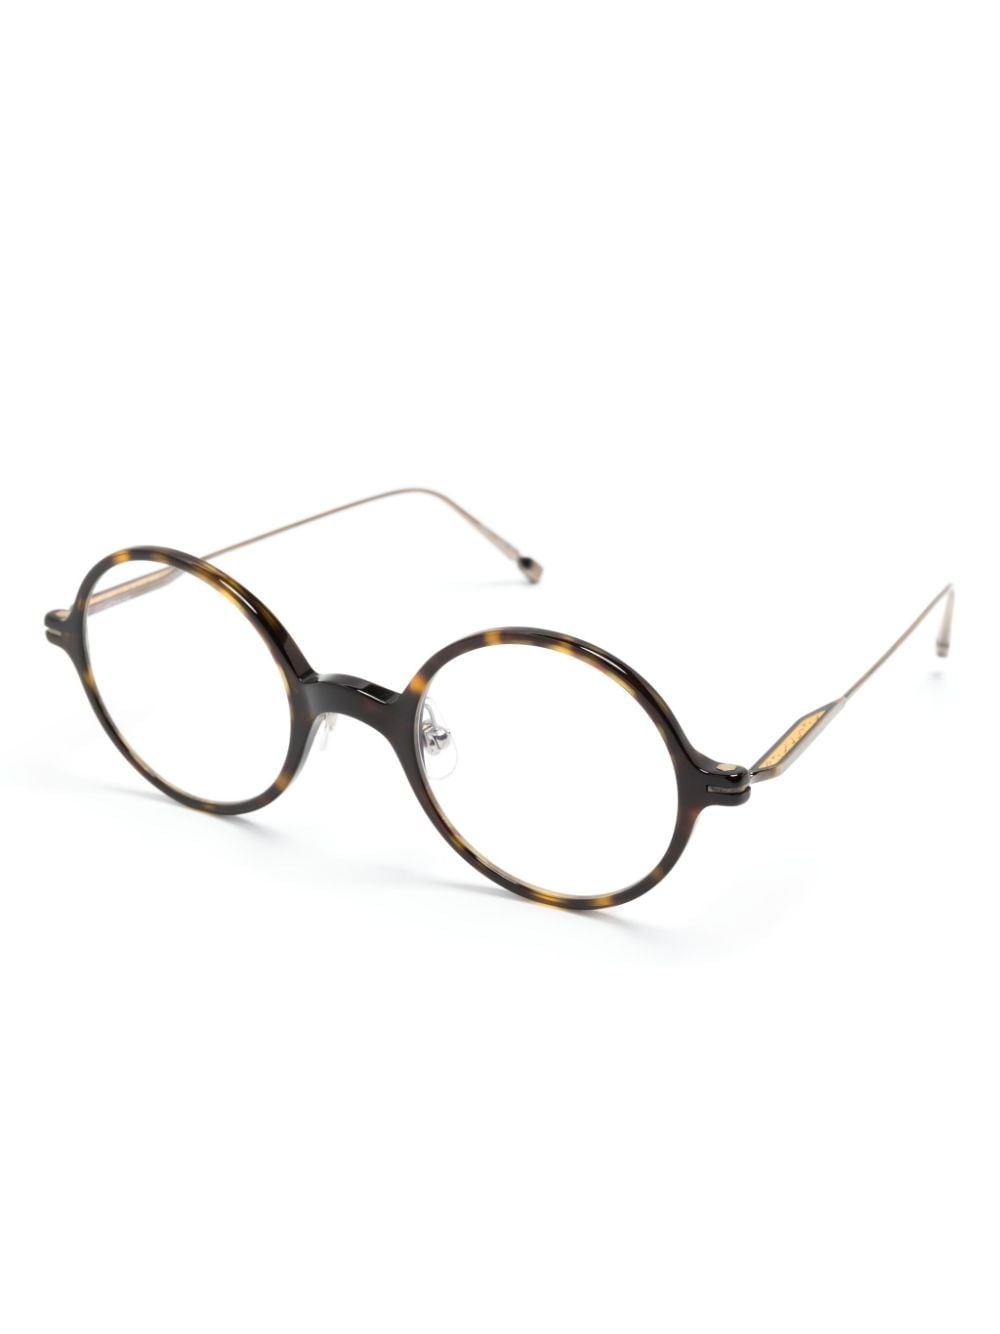 M2054 round-frame glasses - 2